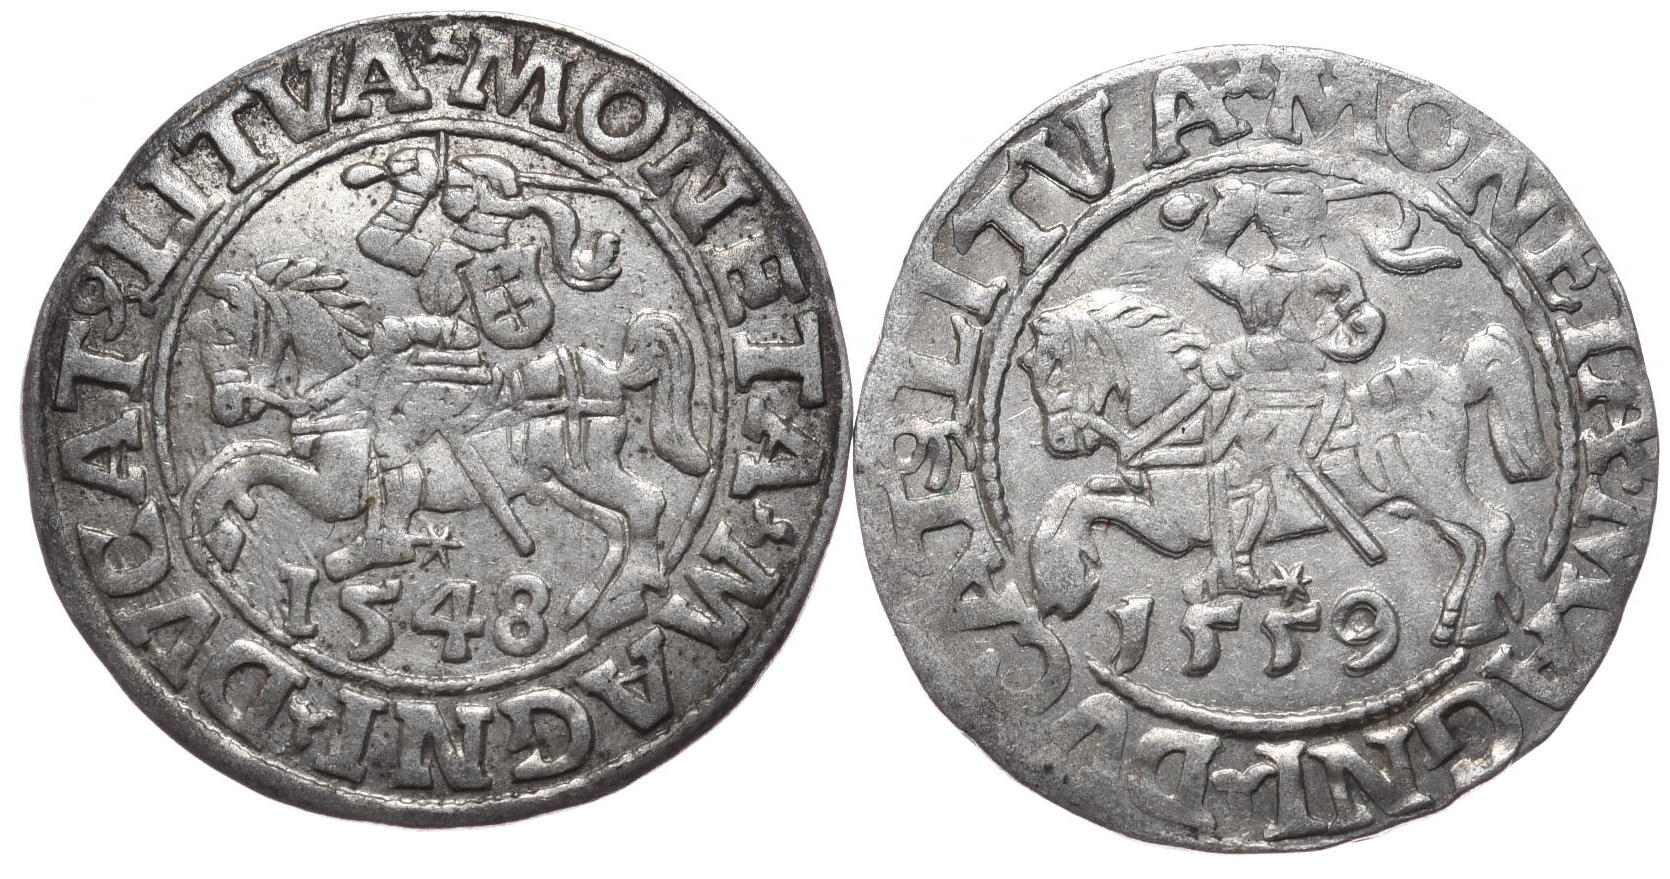 Półgrosze Zygmunta Augusta 1548 i 1559, Wilno - 2 sztuki